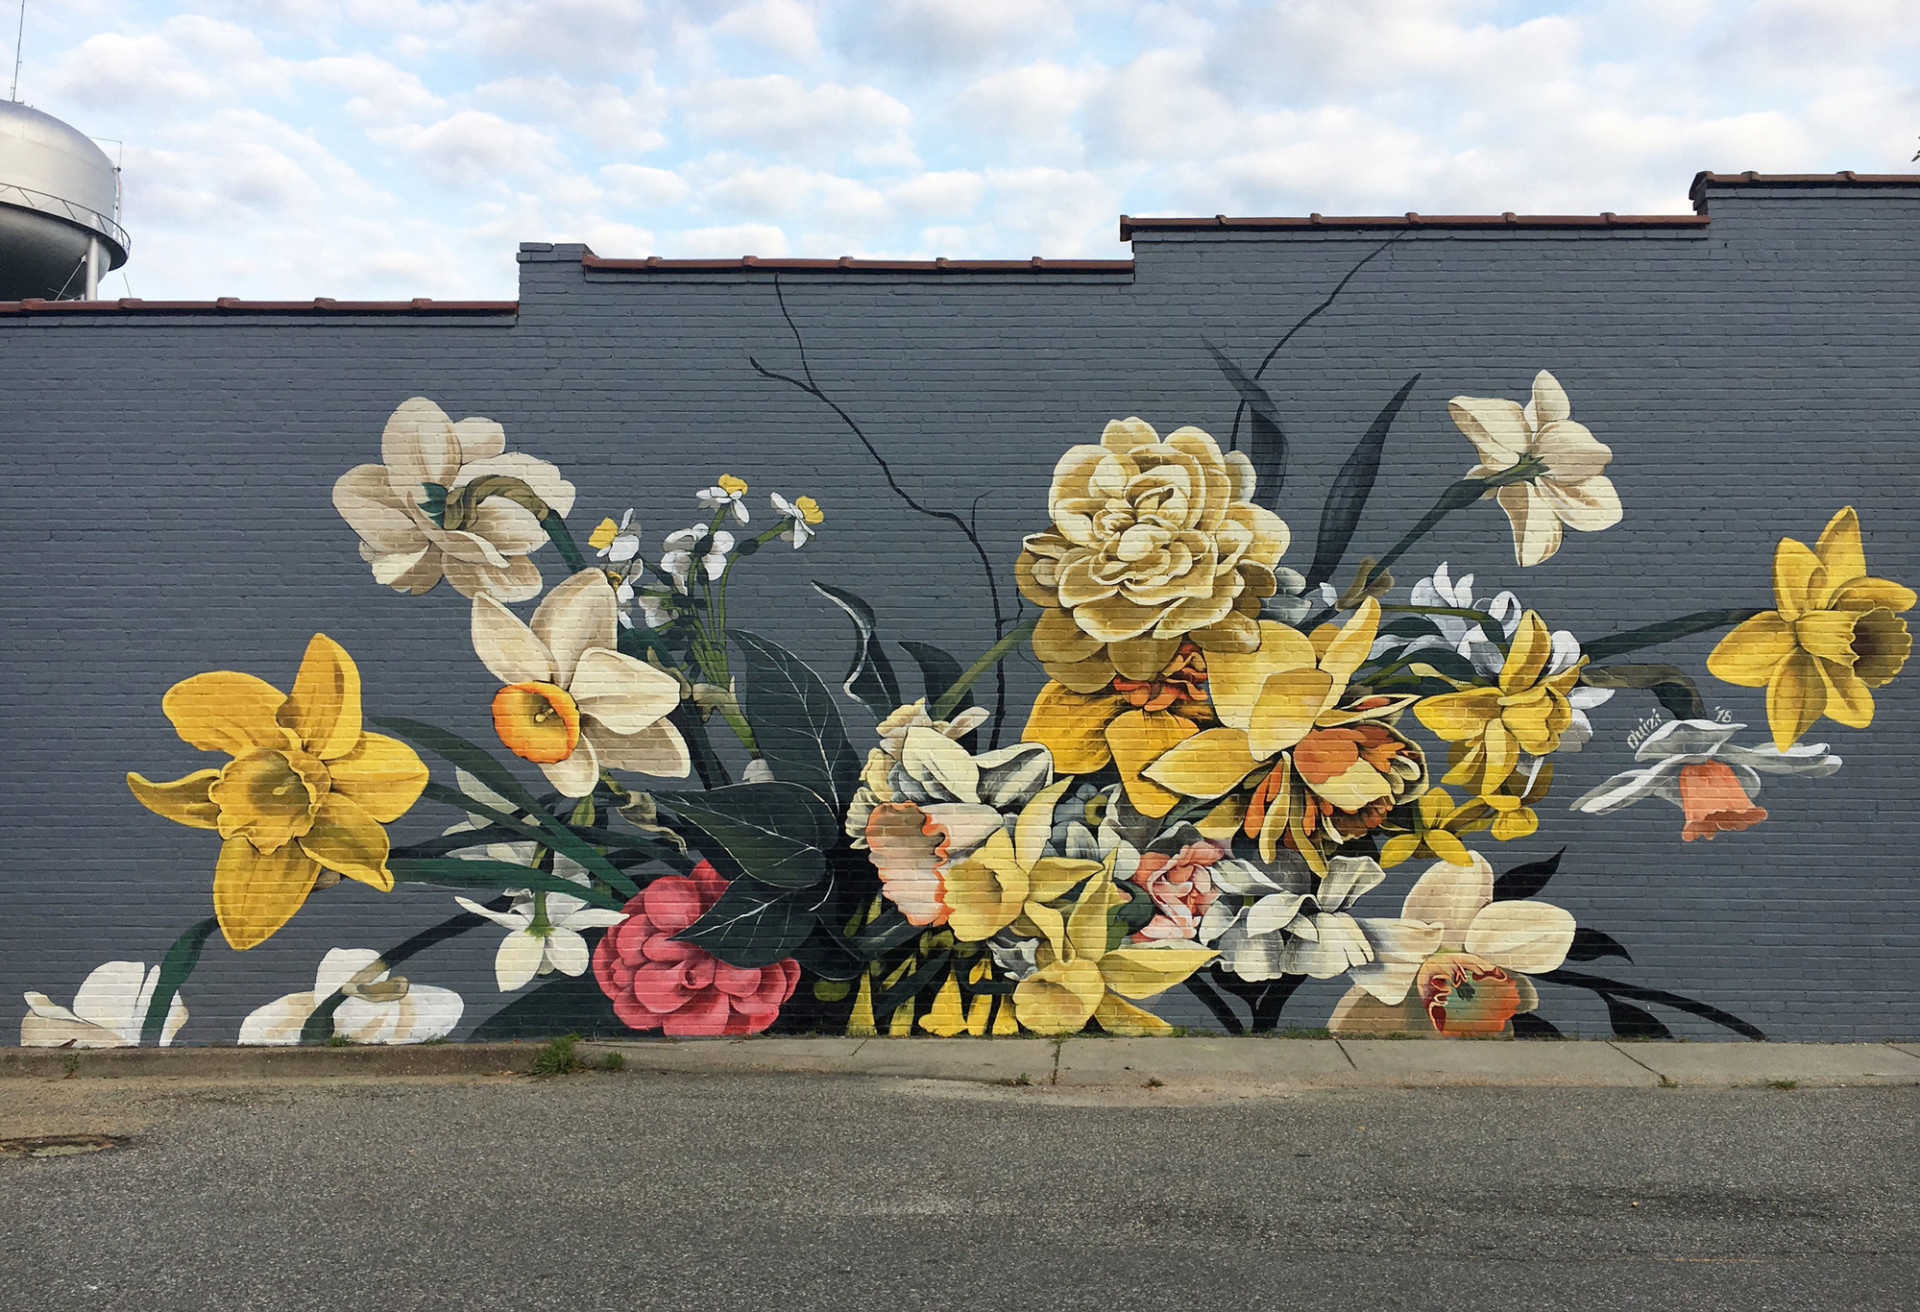 艺术家ouizi原本在洛杉矶从事插画工作,精于手工刻字丶大型花卉壁画